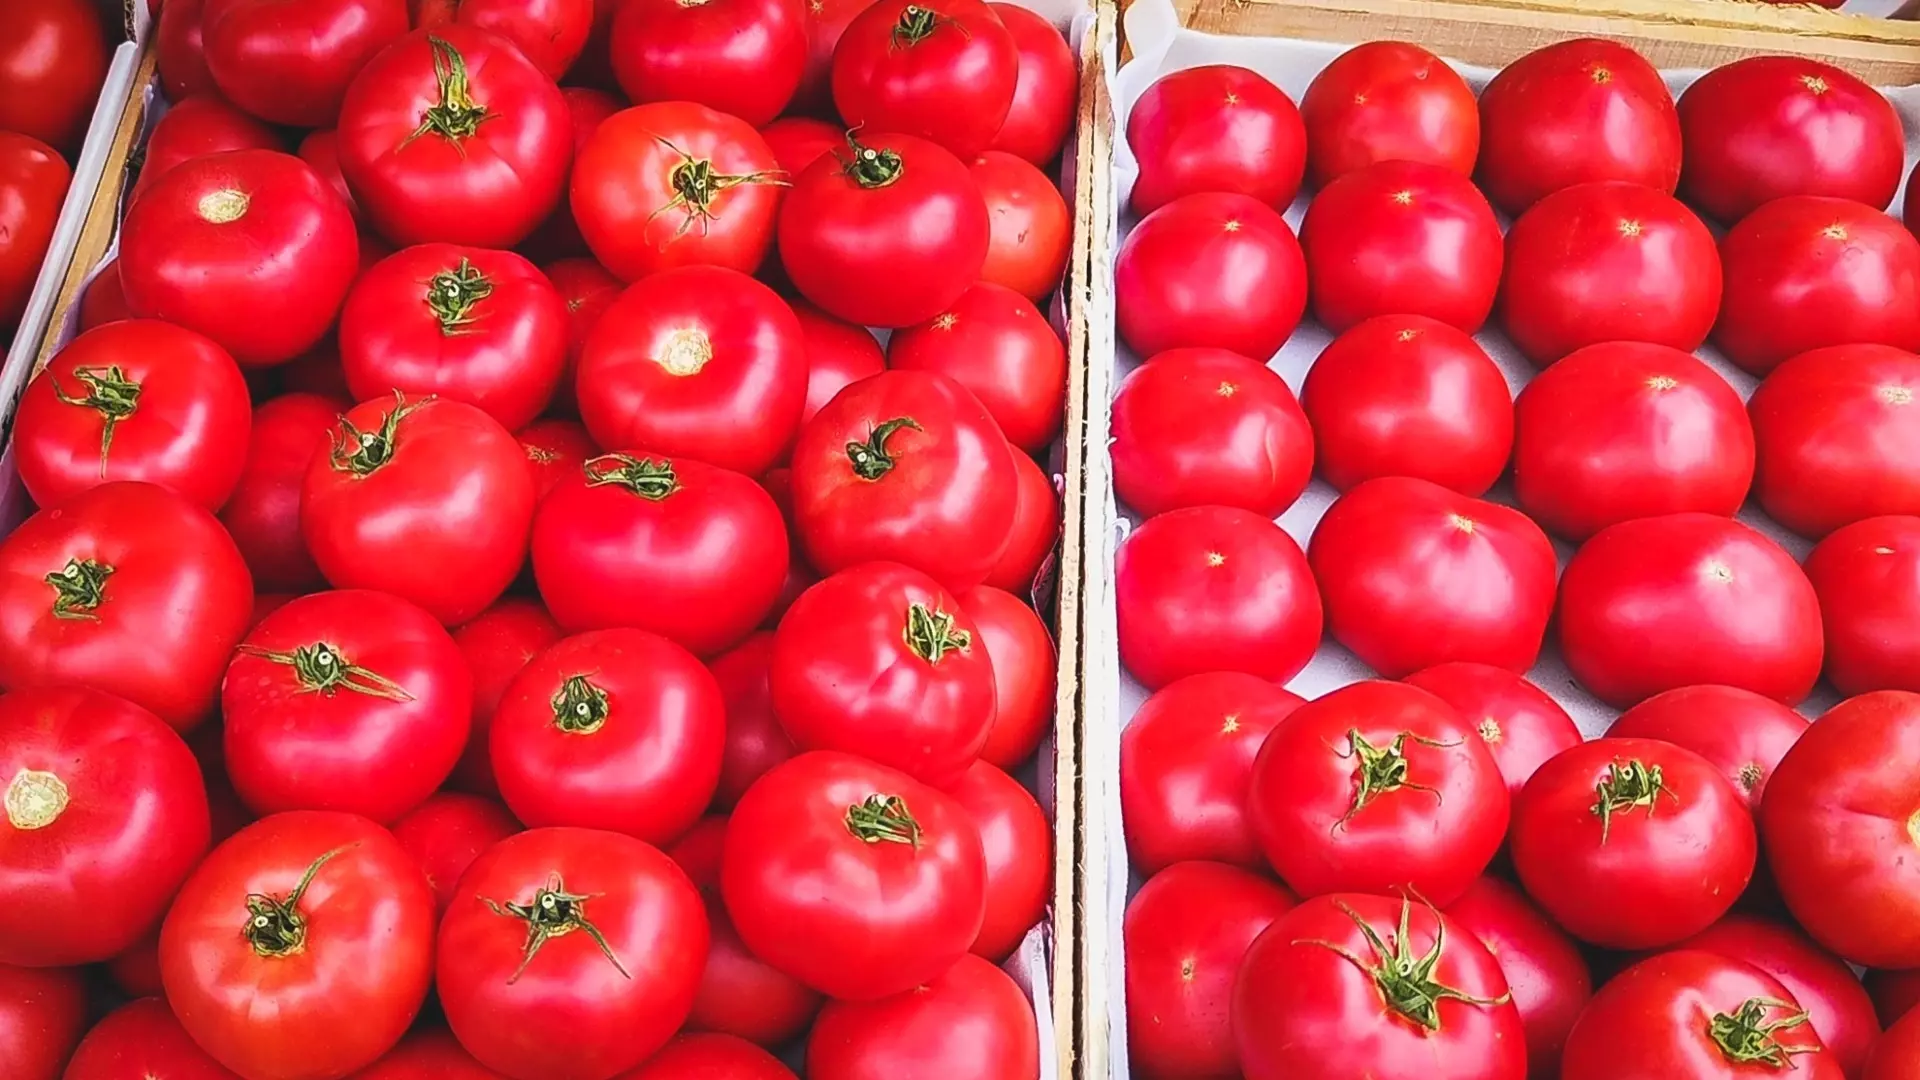 Около 20 тонн зараженных помидоров из Узбекистана привезли в Екатеринбург